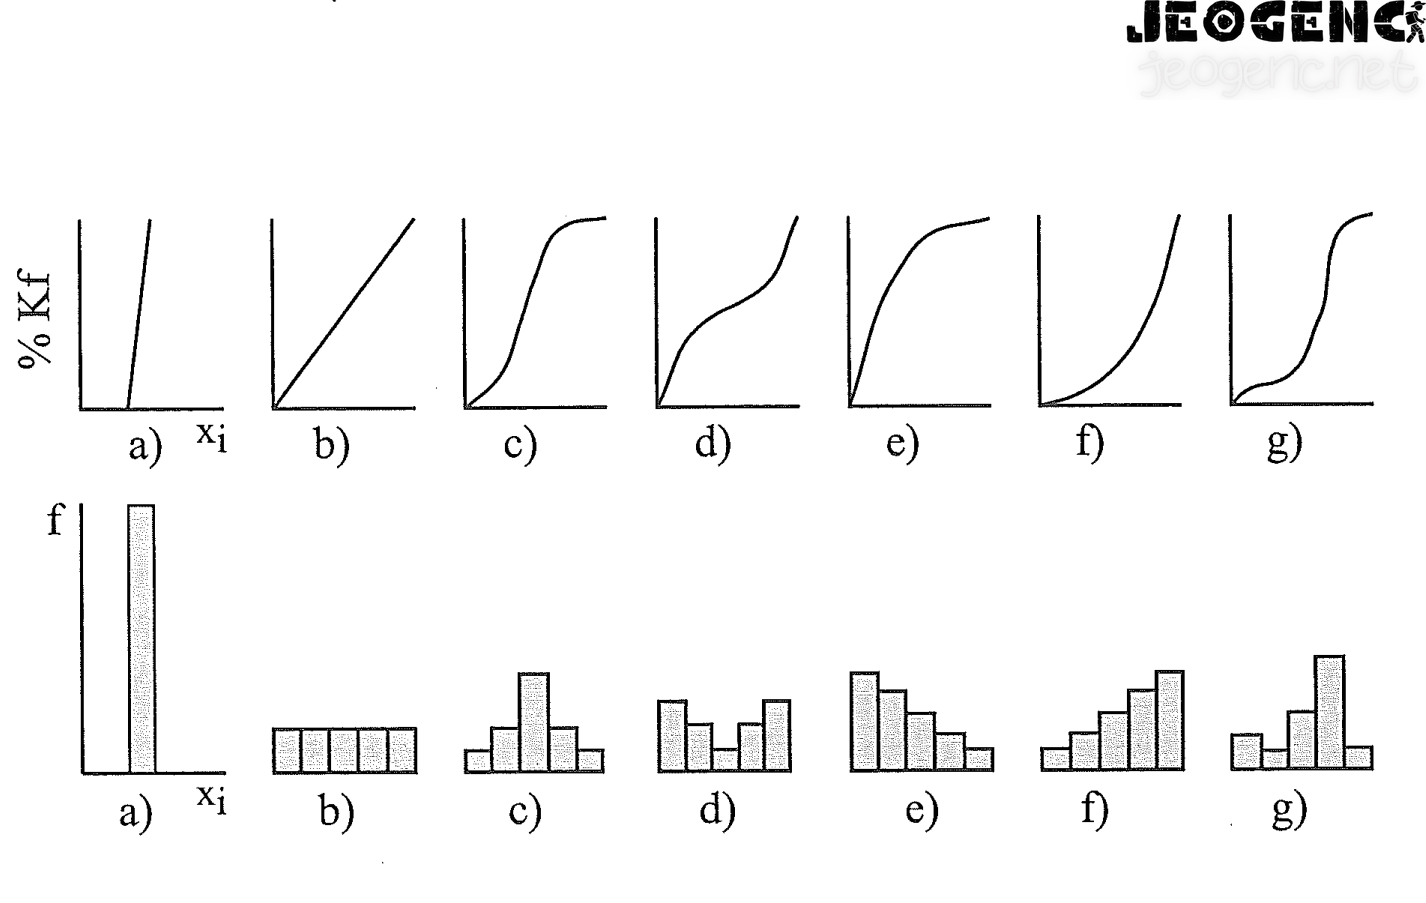 Bazı dağılımlara ait histogram ve % kümülatif frekans eğrileri